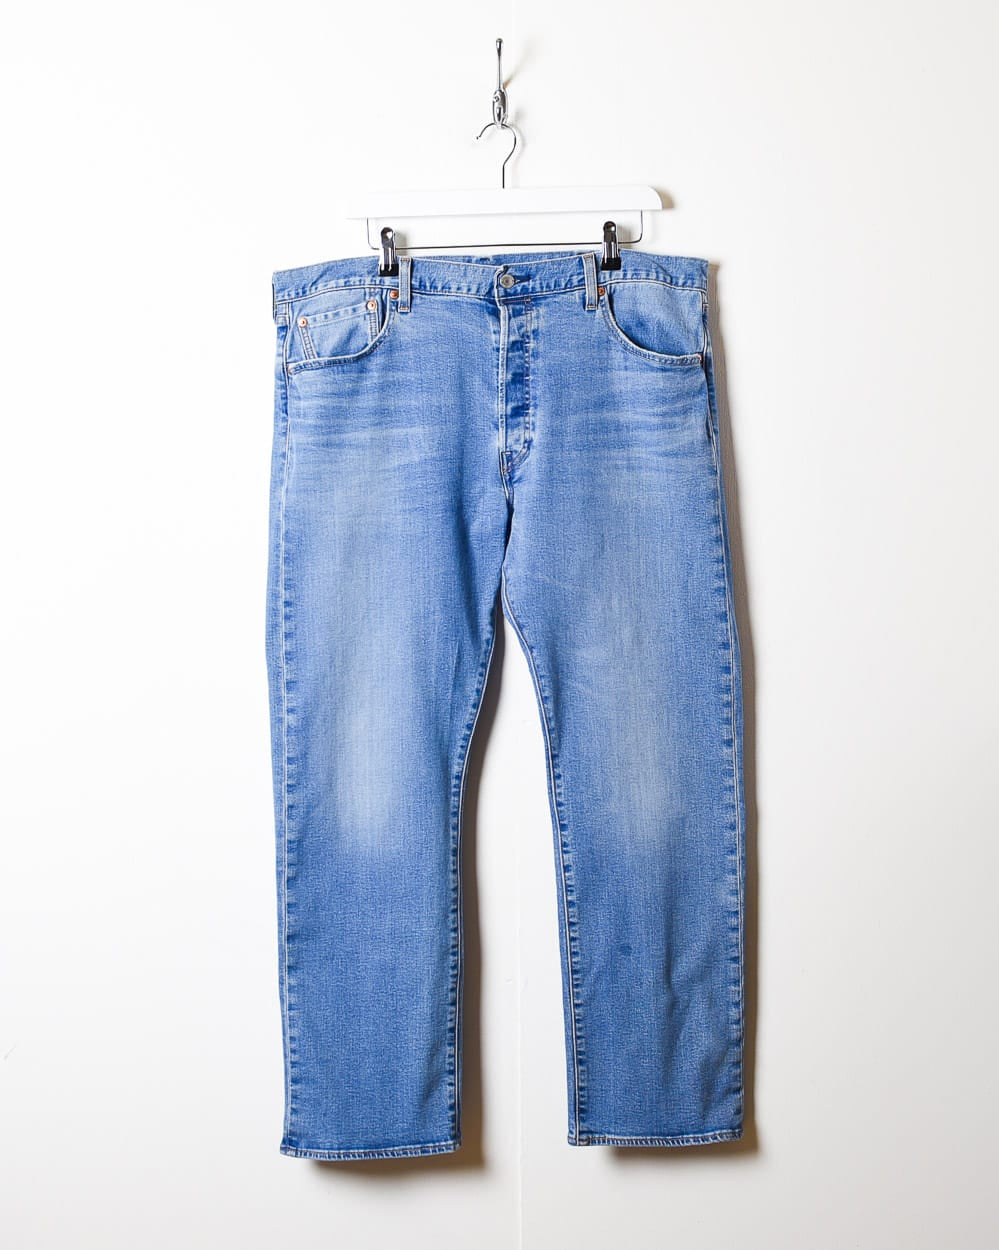 Blue Levi's 501 Jeans - W38 L29